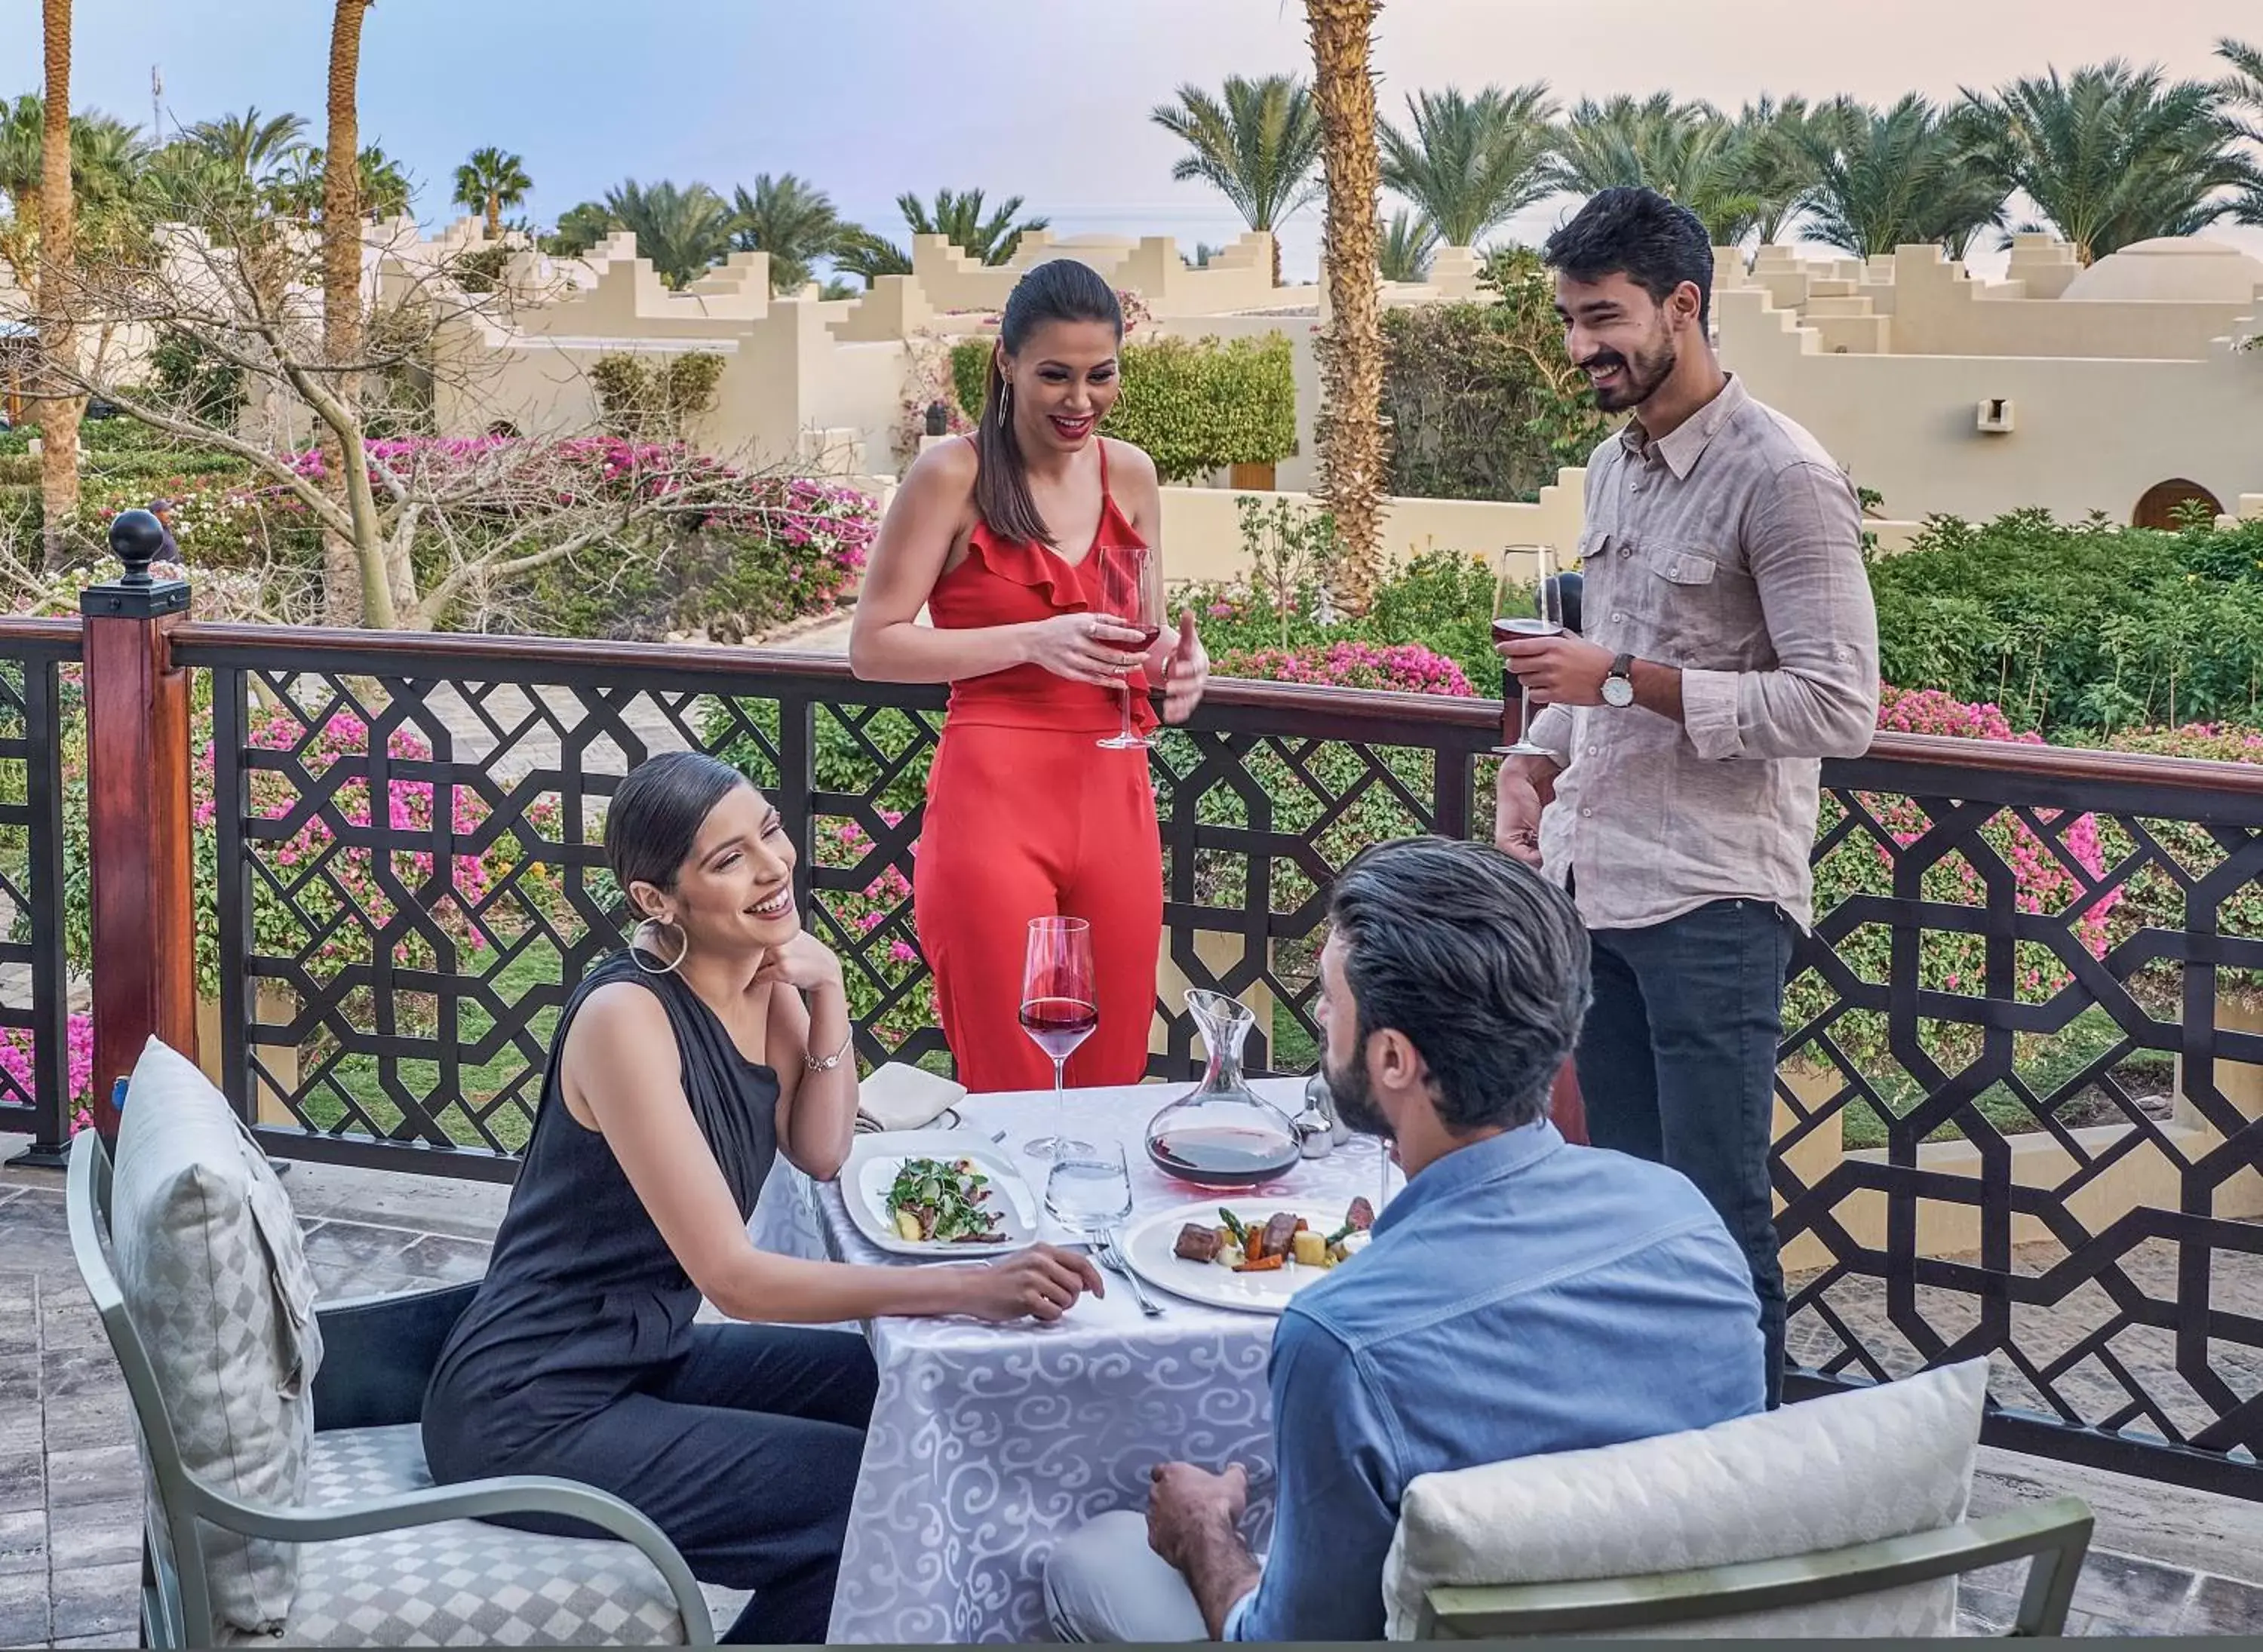 Lunch in Four Seasons Resort Sharm El Sheikh